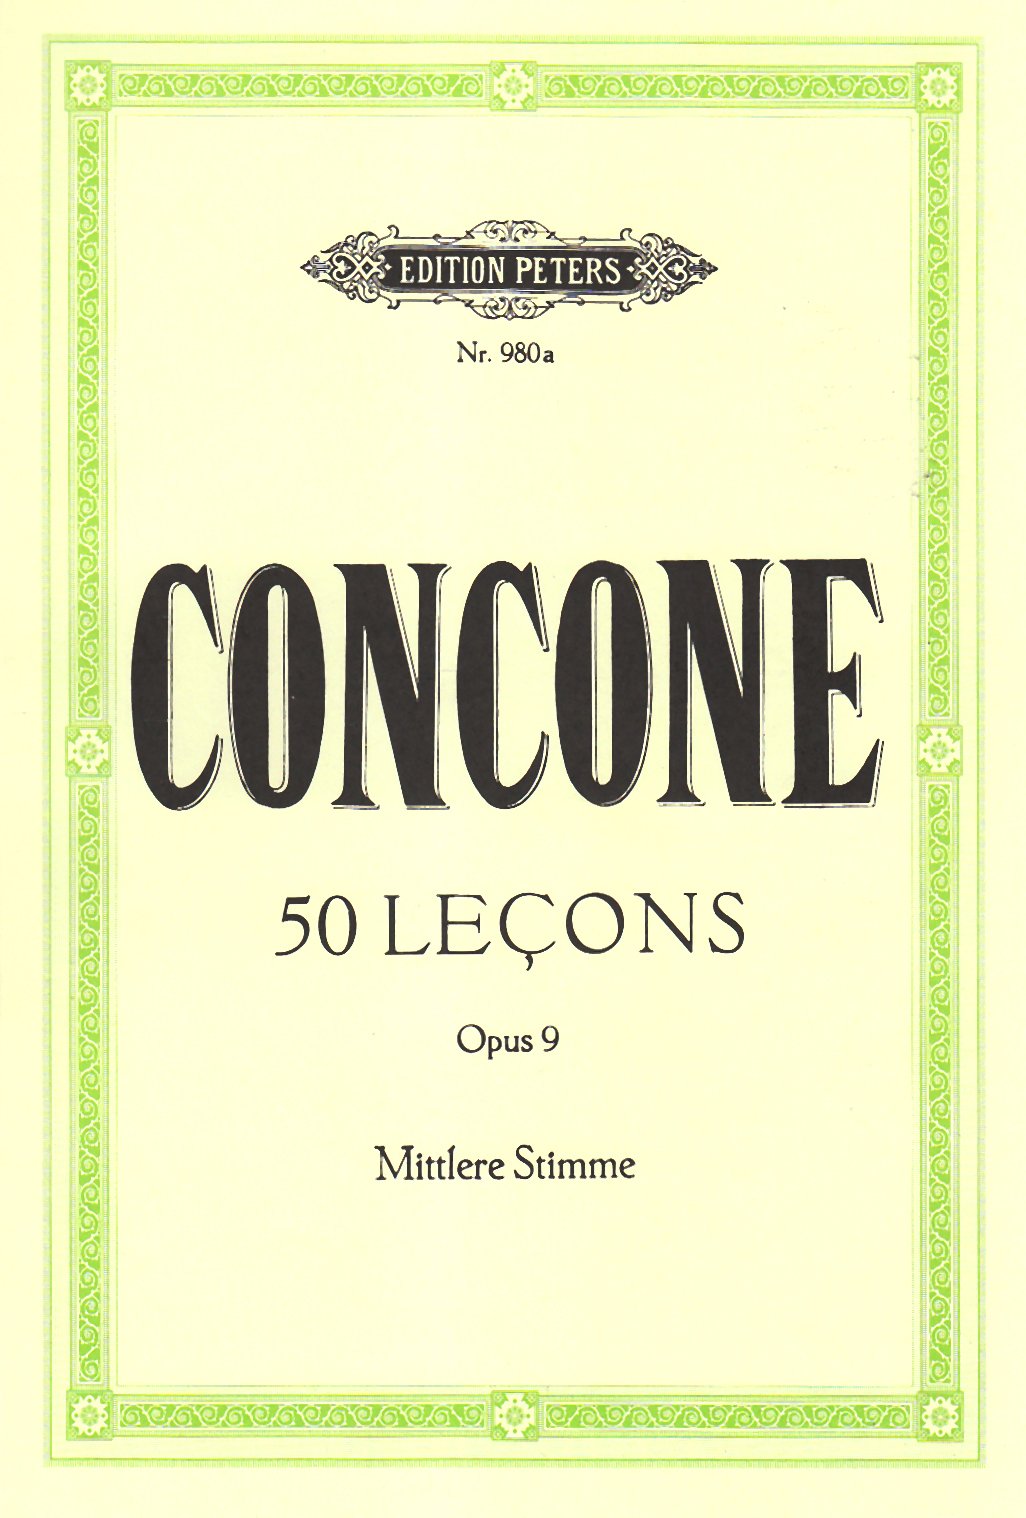 Concone: 50 Leçons de Chant (Lessons), Op. 9